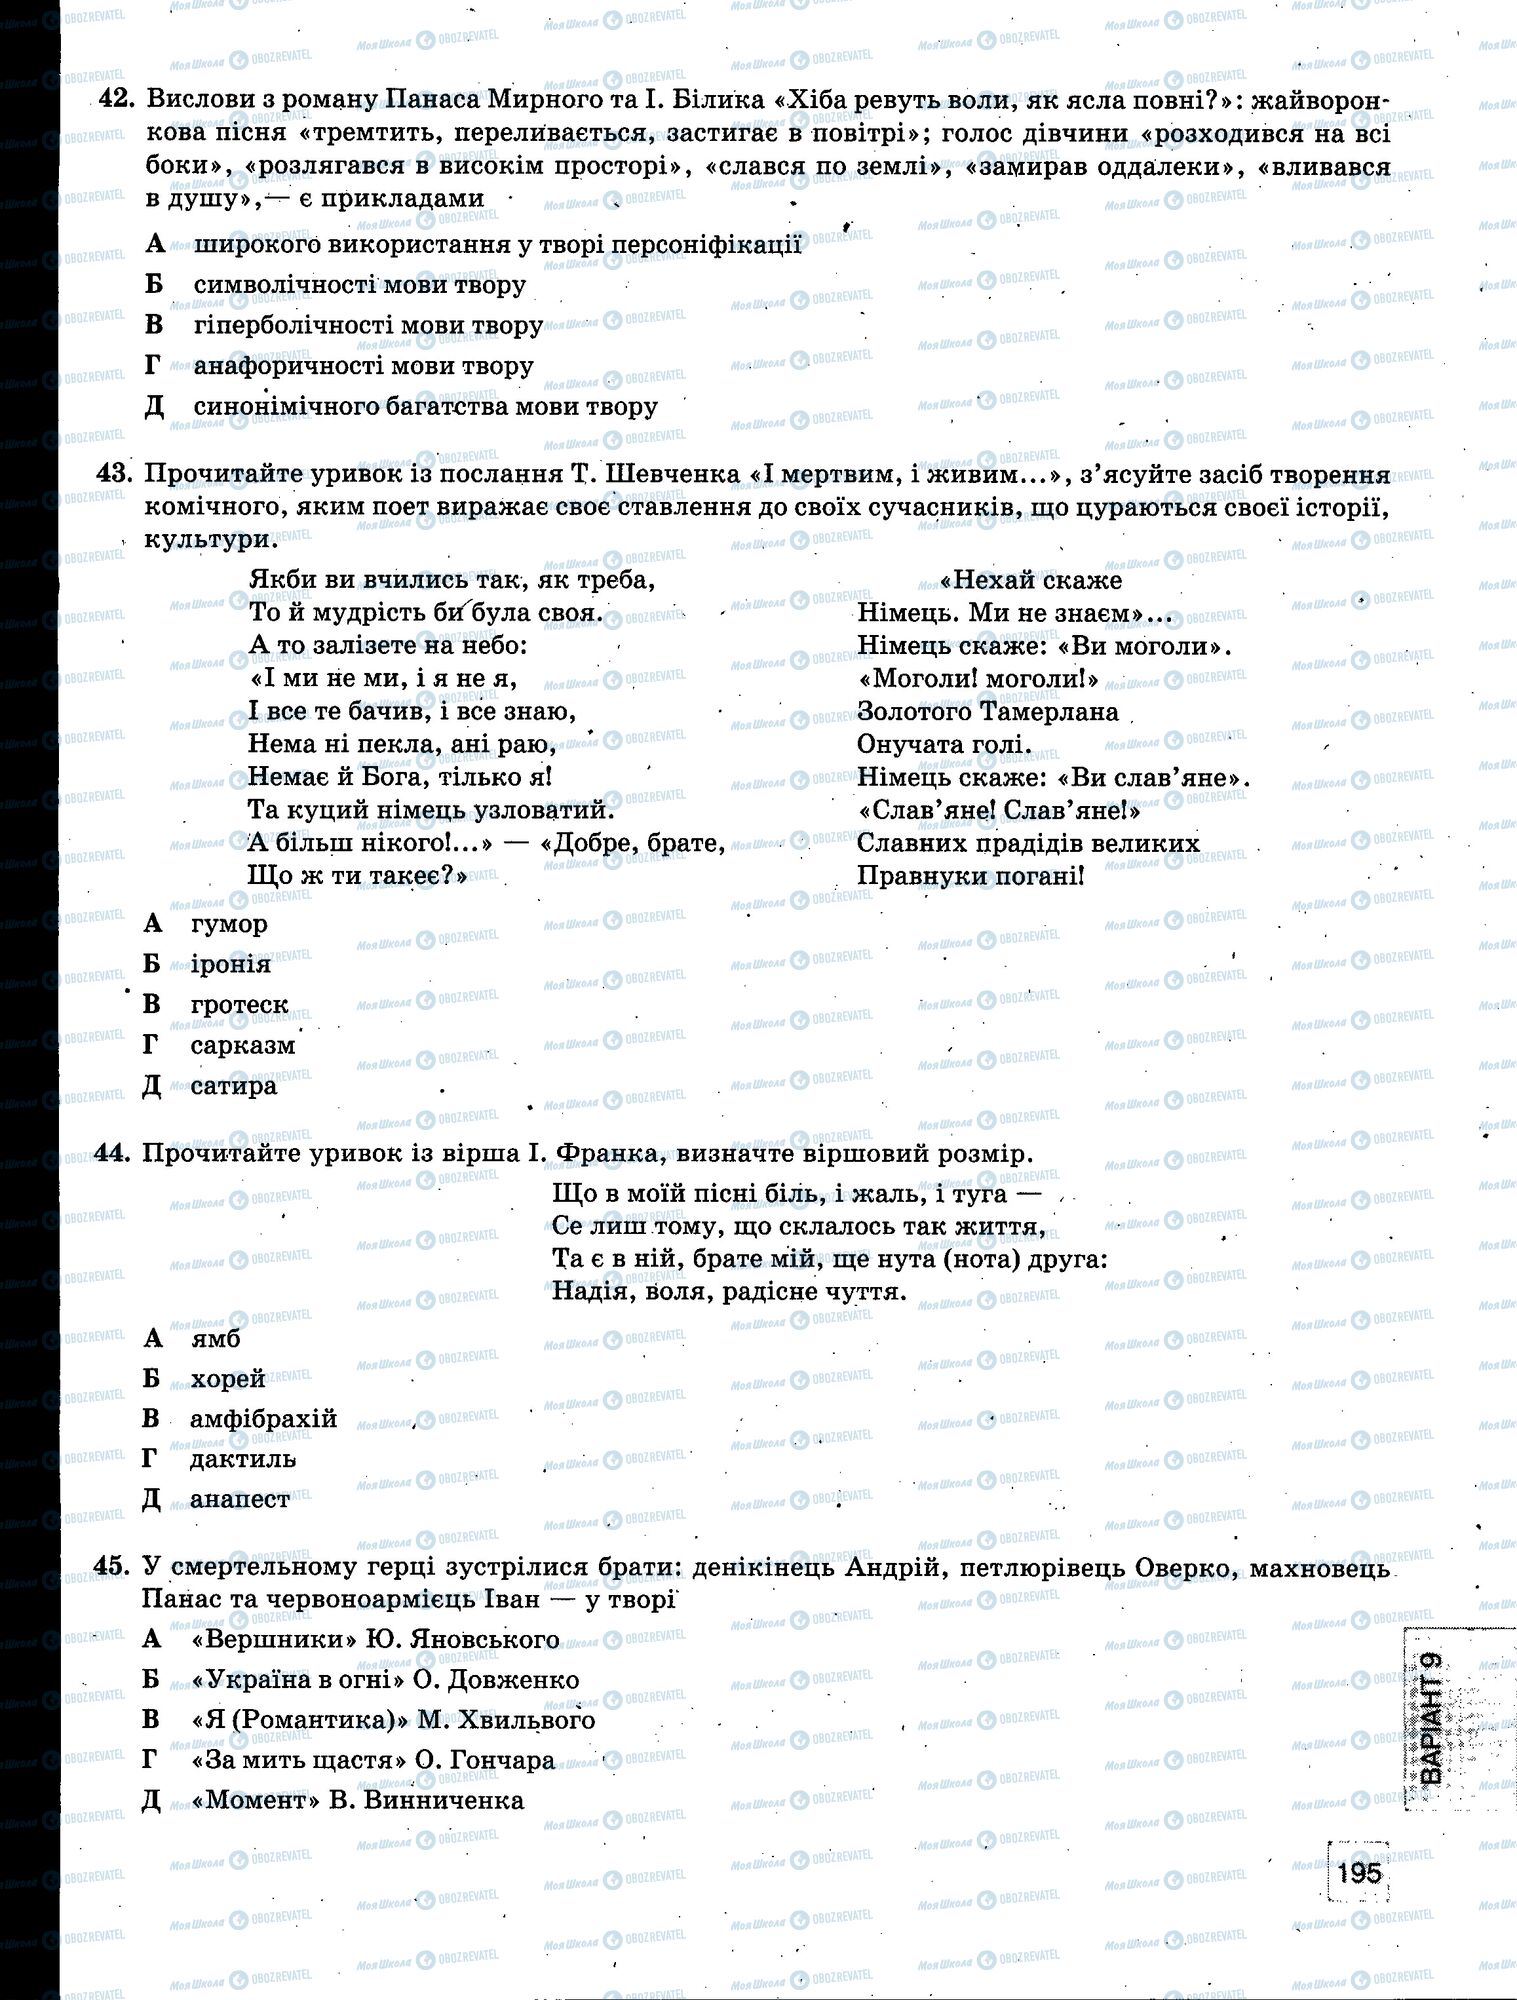 ЗНО Укр мова 11 класс страница 195